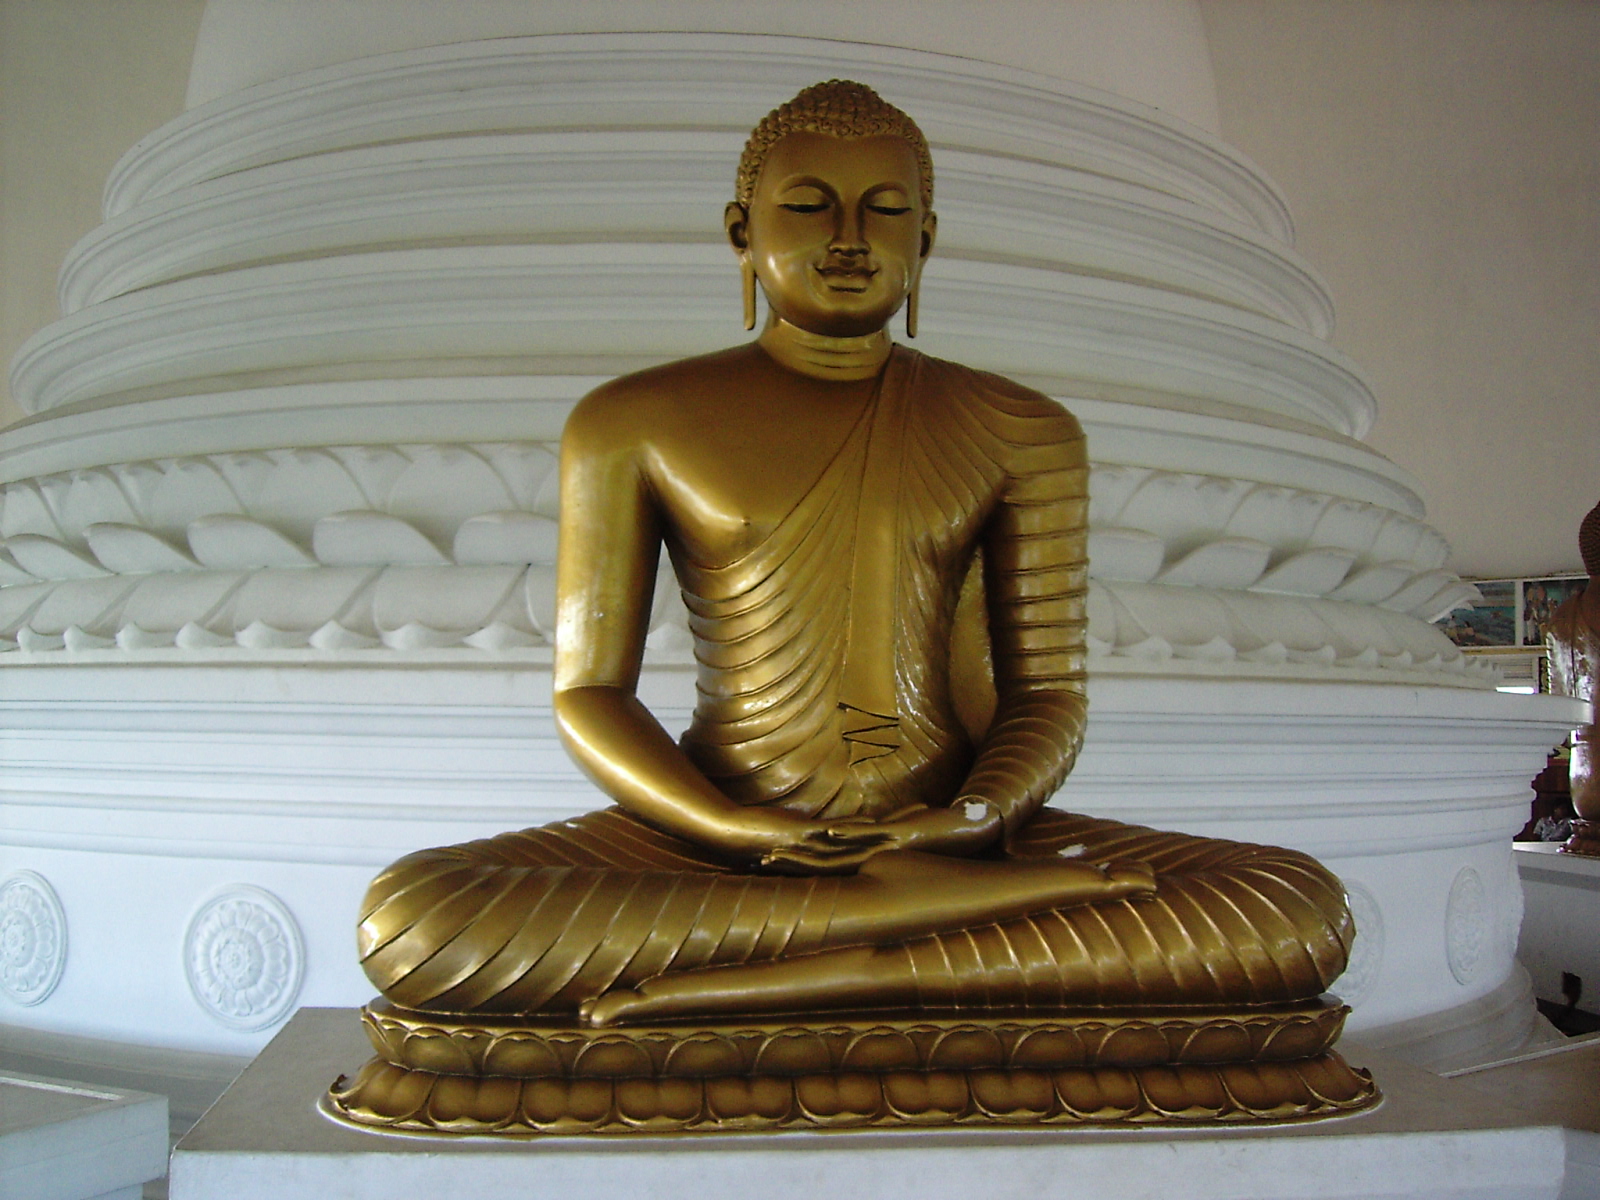 File:Lord Buddha in Sri Lanka - Kalutara.jpg - Wikipedia